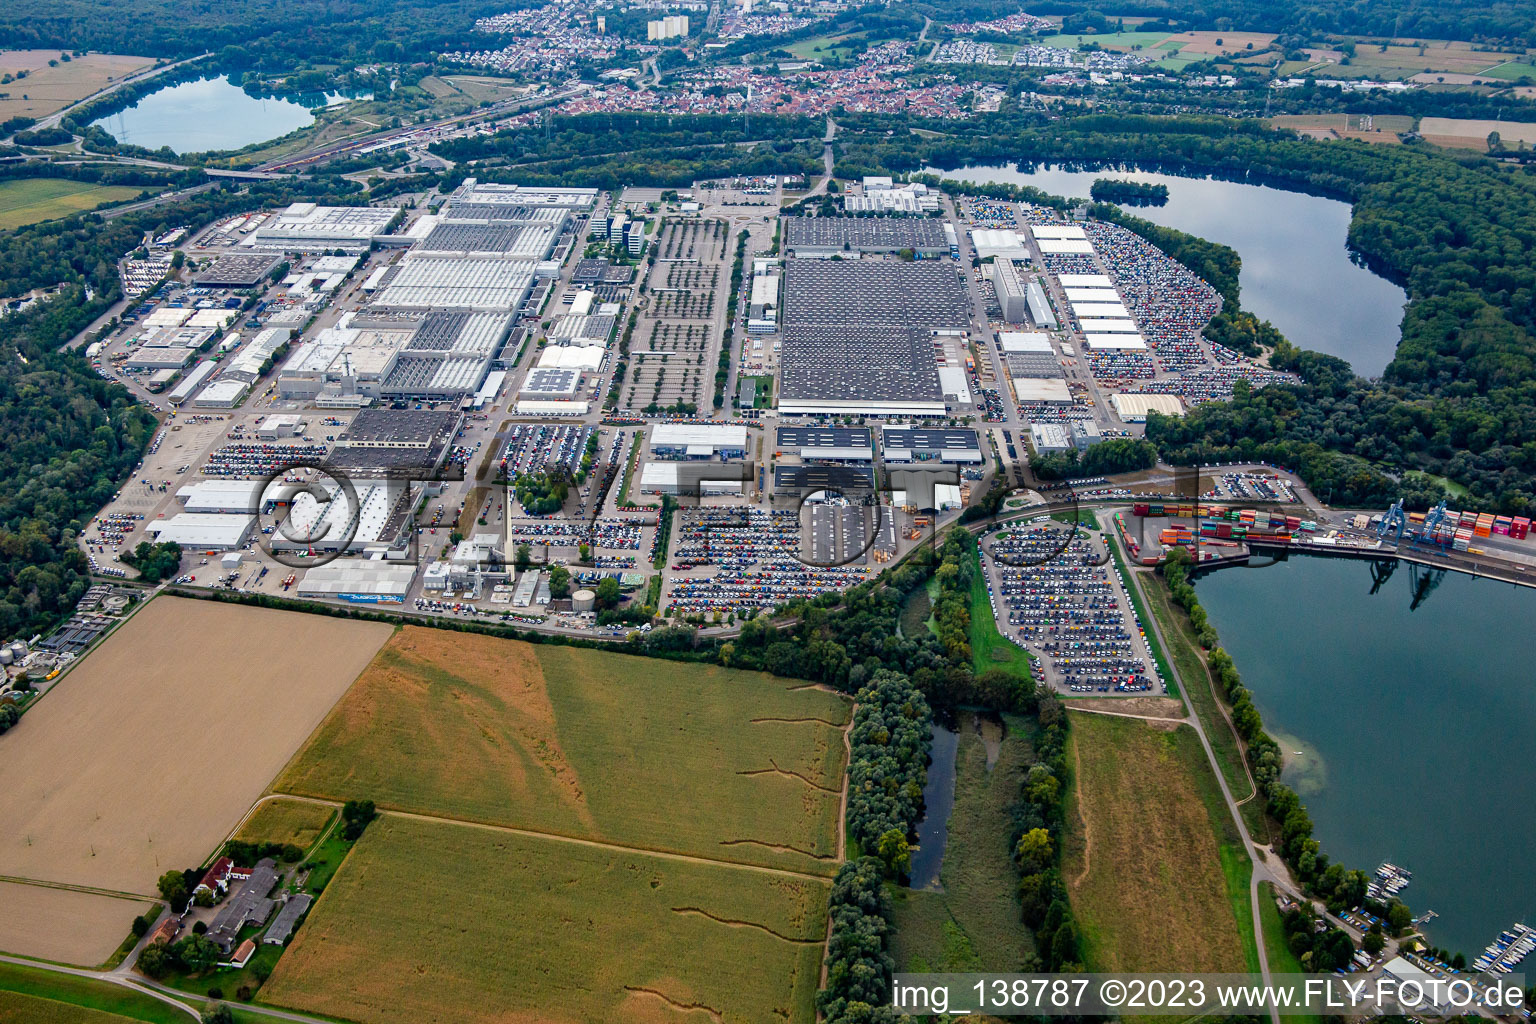 Vue aérienne de Daimler Truck AG, usine Mercedes-Benz Wörth dans l'usine automobile de Wörth à le quartier Maximiliansau in Wörth am Rhein dans le département Rhénanie-Palatinat, Allemagne